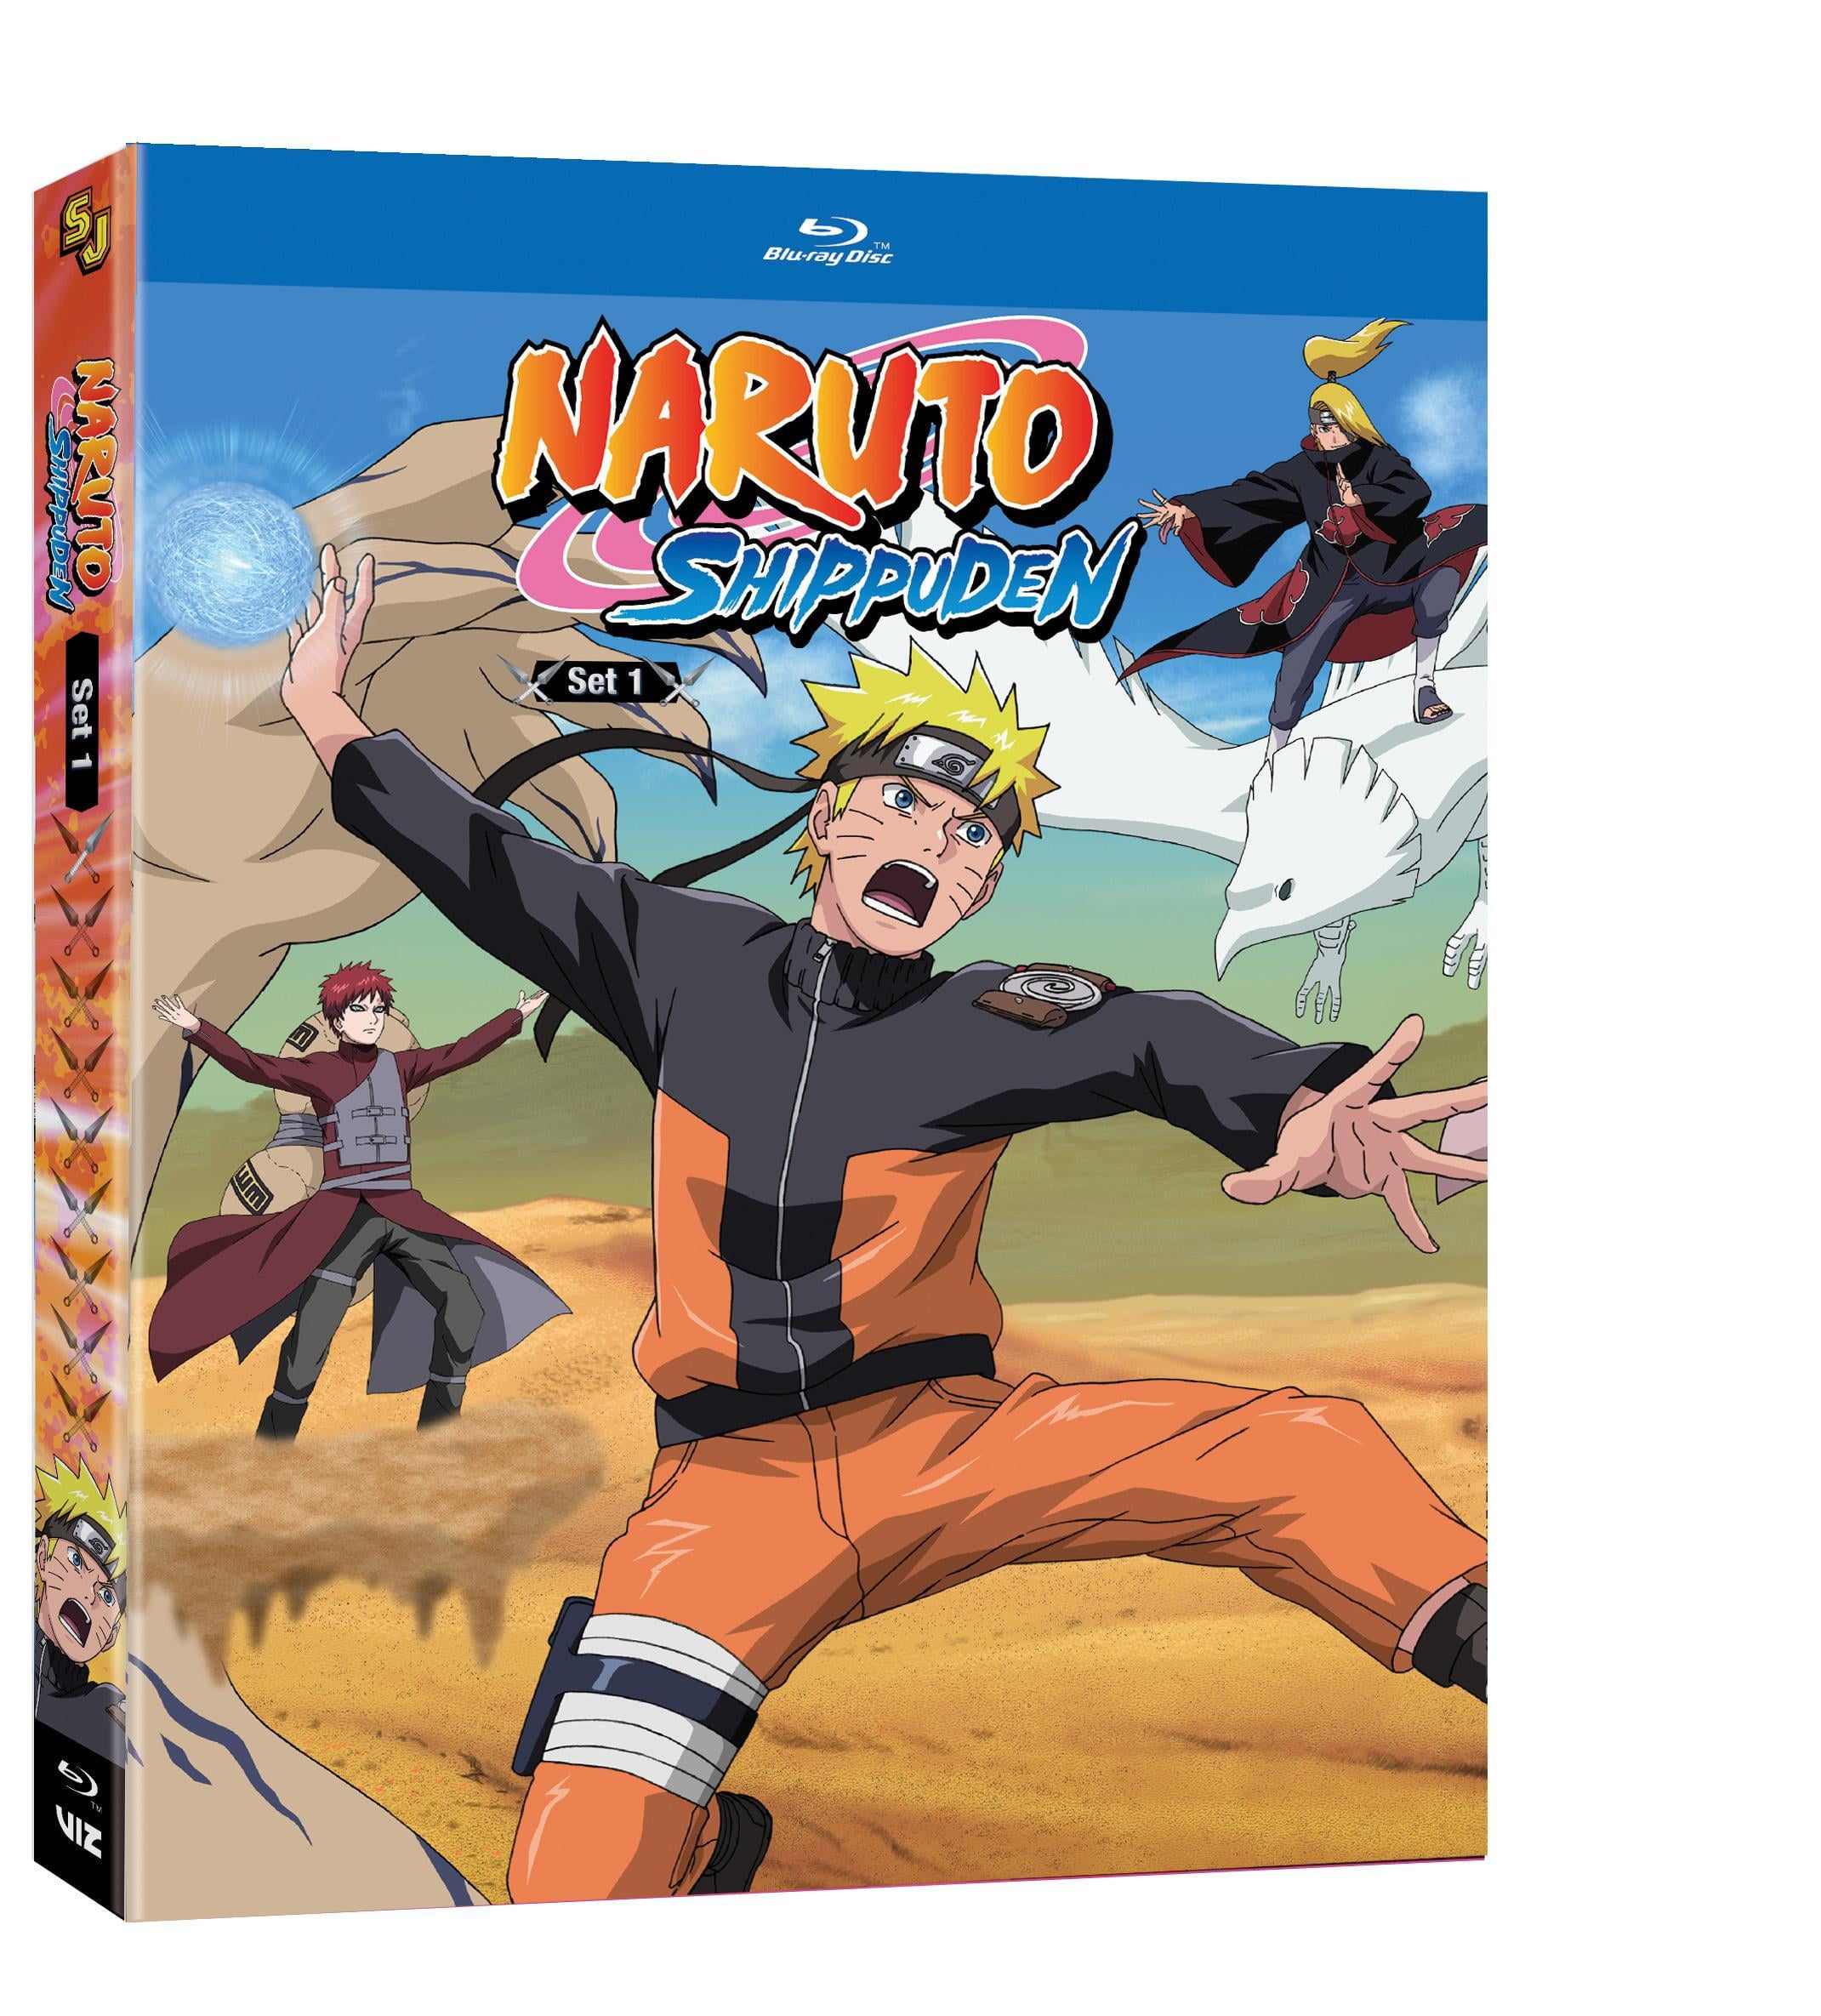 Naruto. Temporada 2. Episodios 26 a 50. DVD